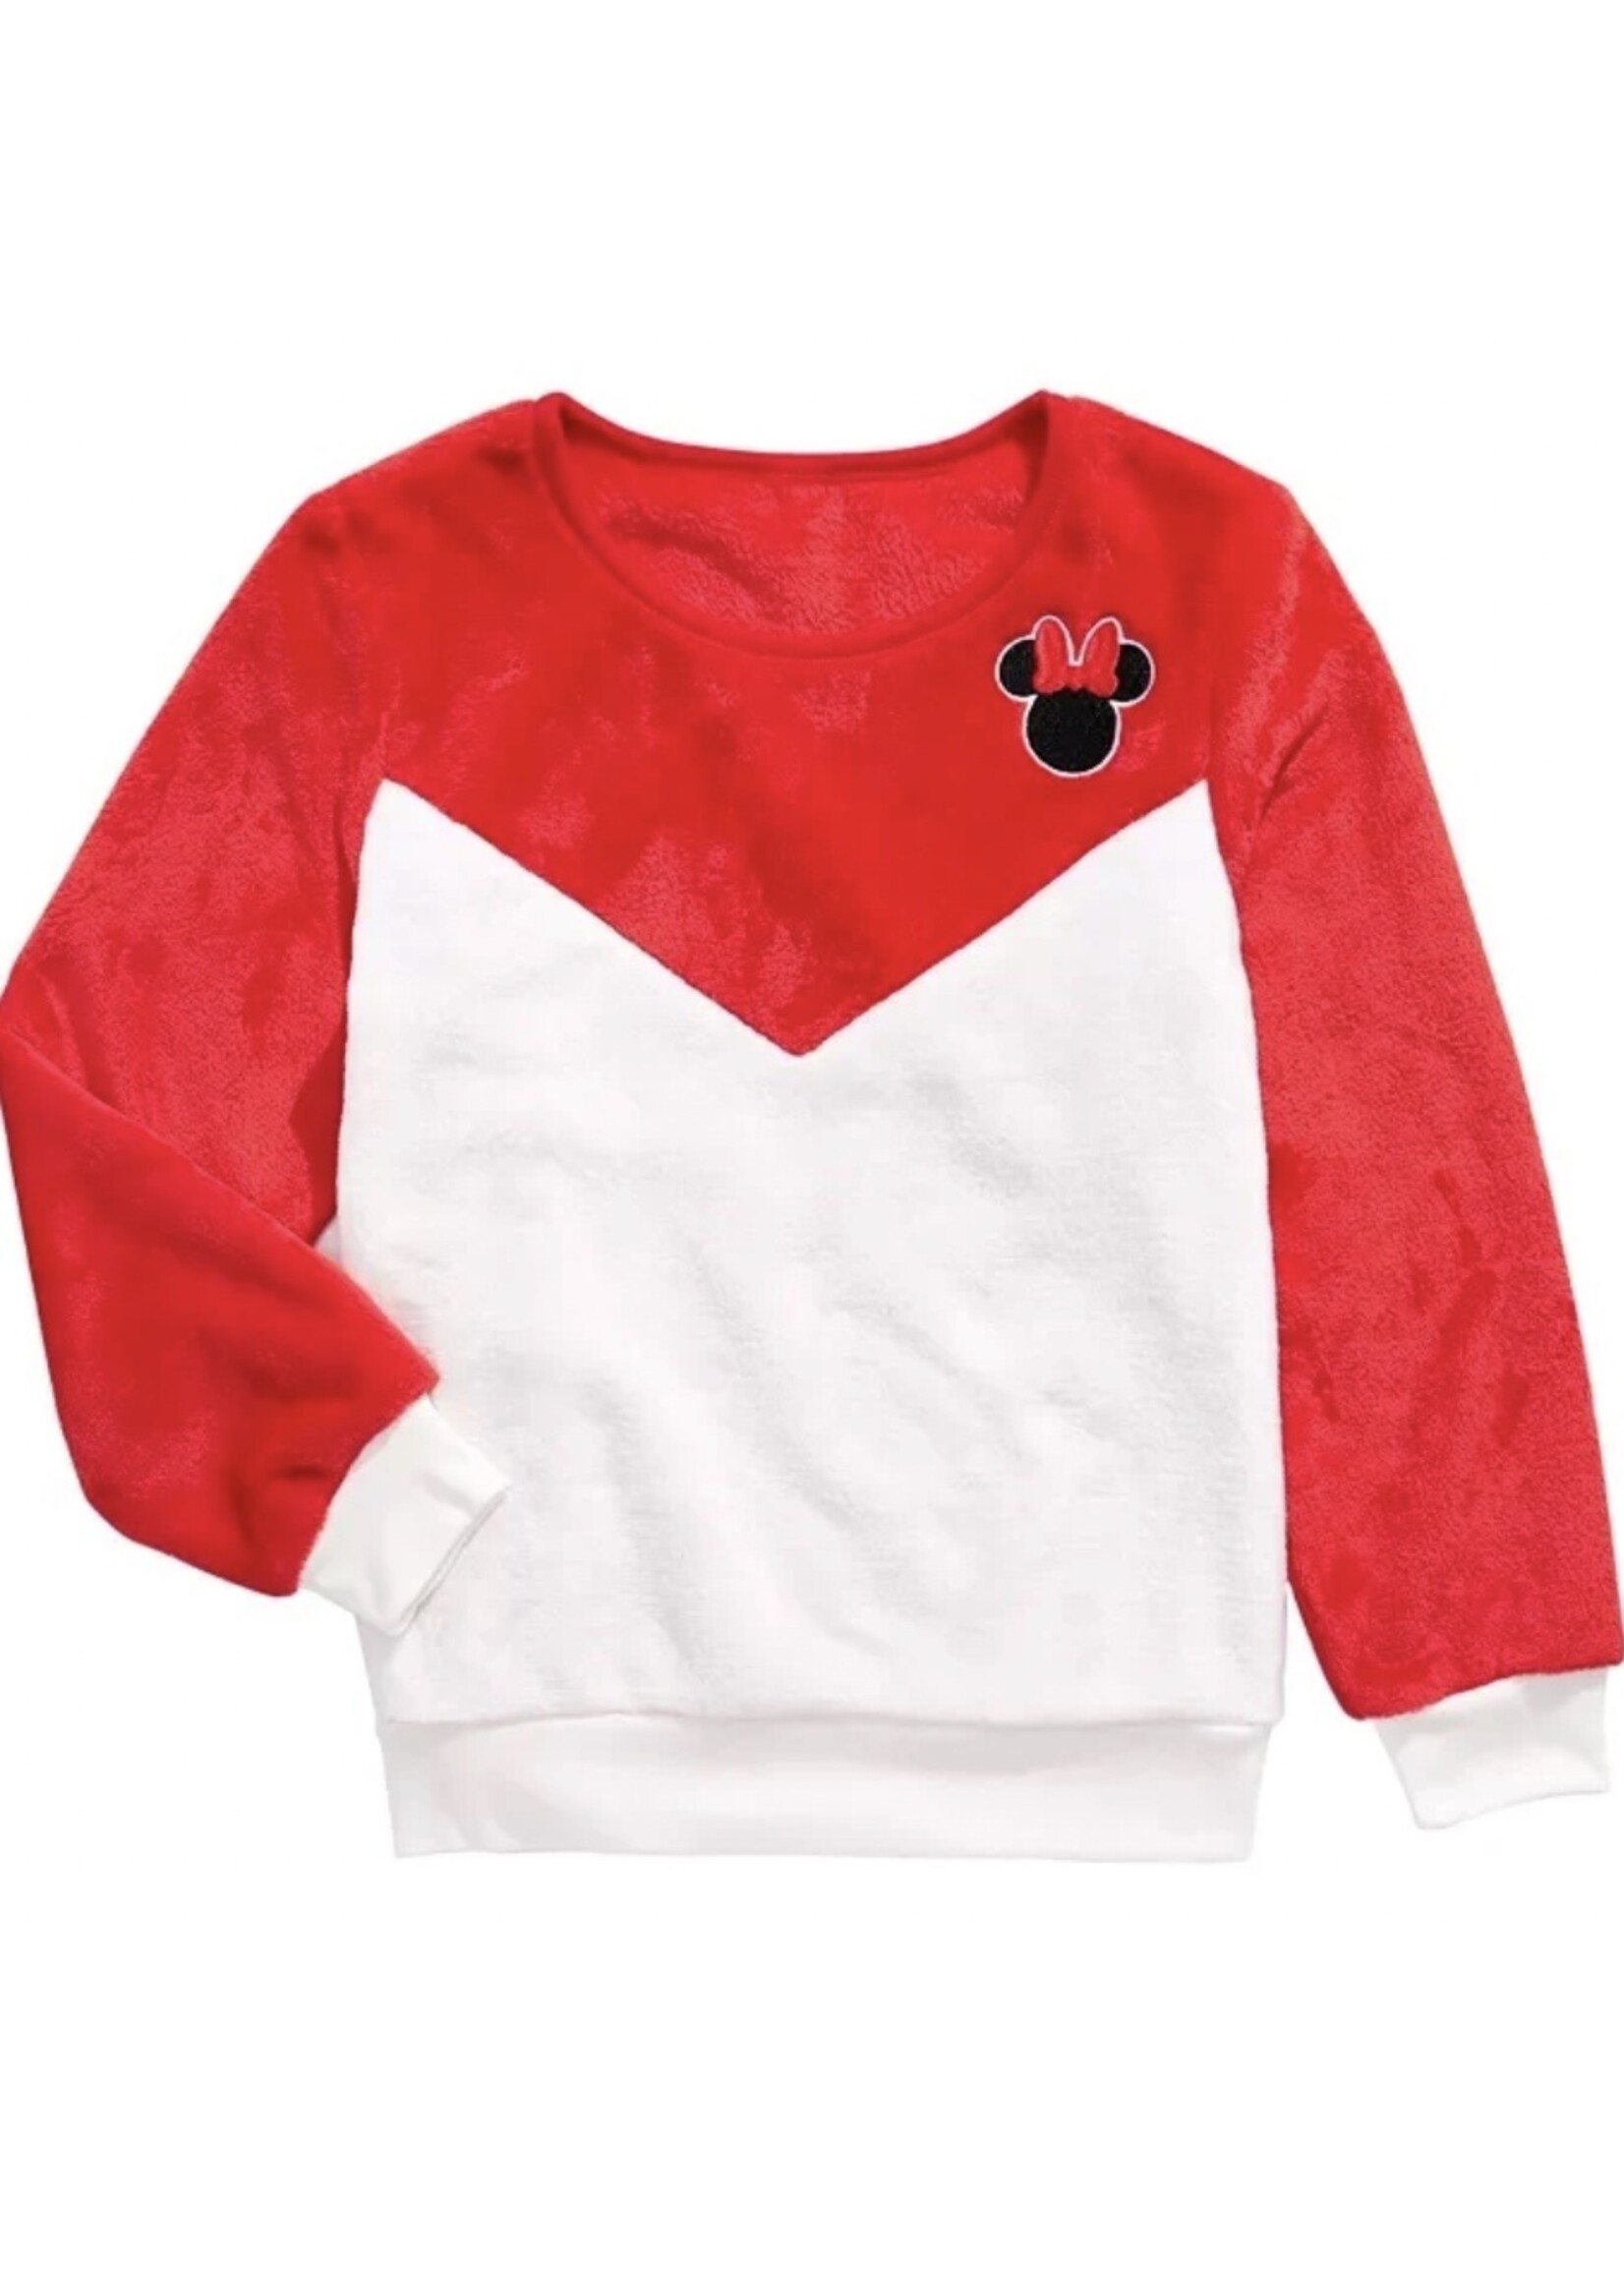 Disney Disney Minnie Mouse  Wobbie Sweater Top, XL